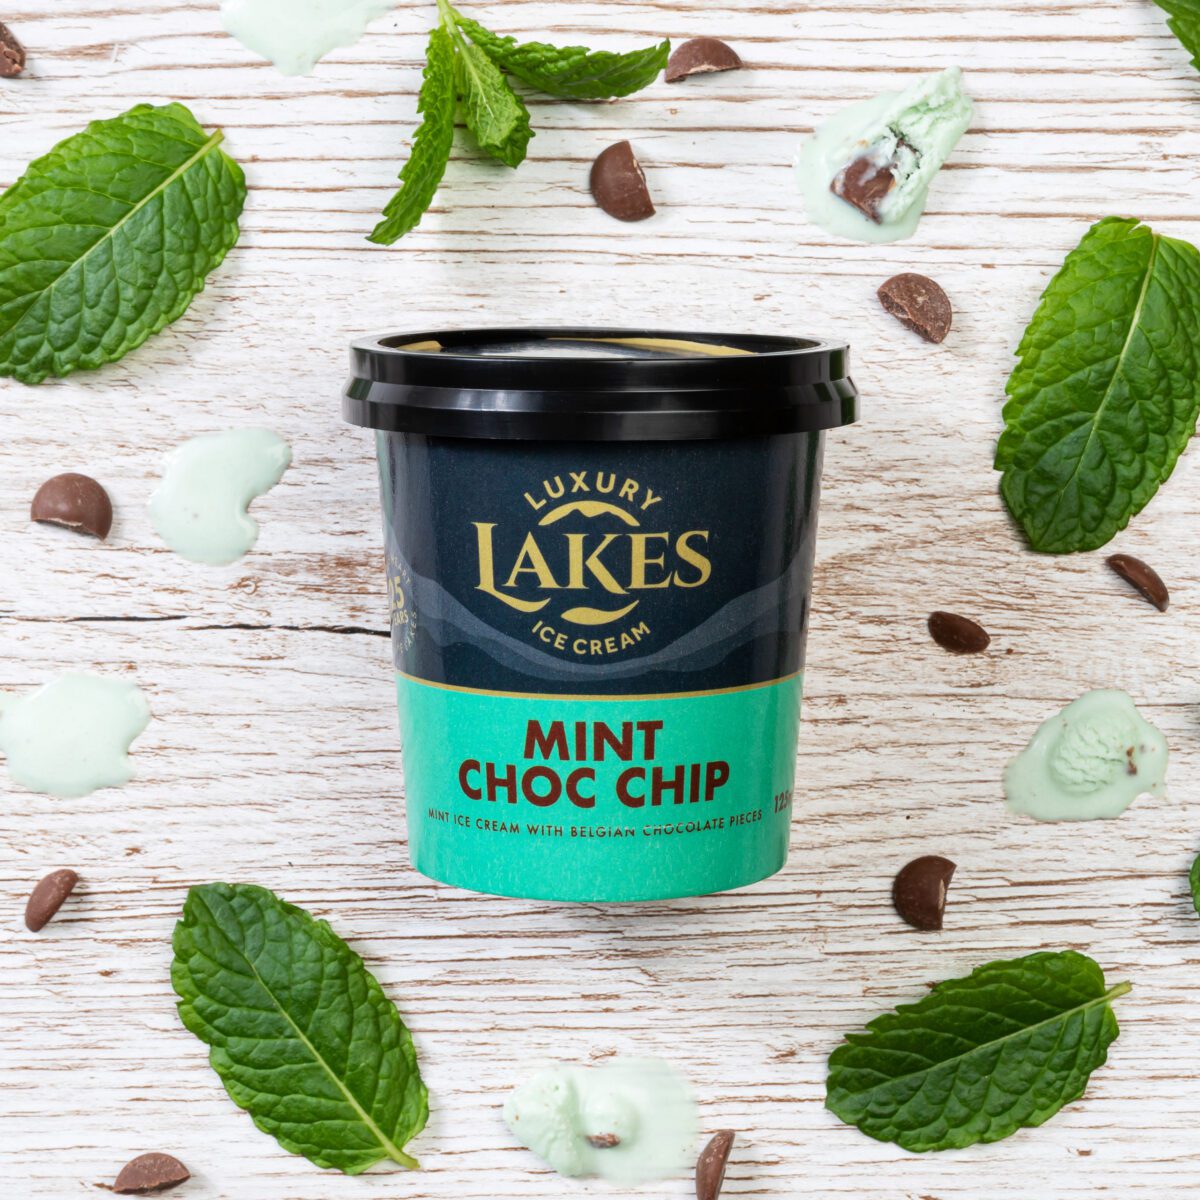 Mint Choc Chip ice cream pot